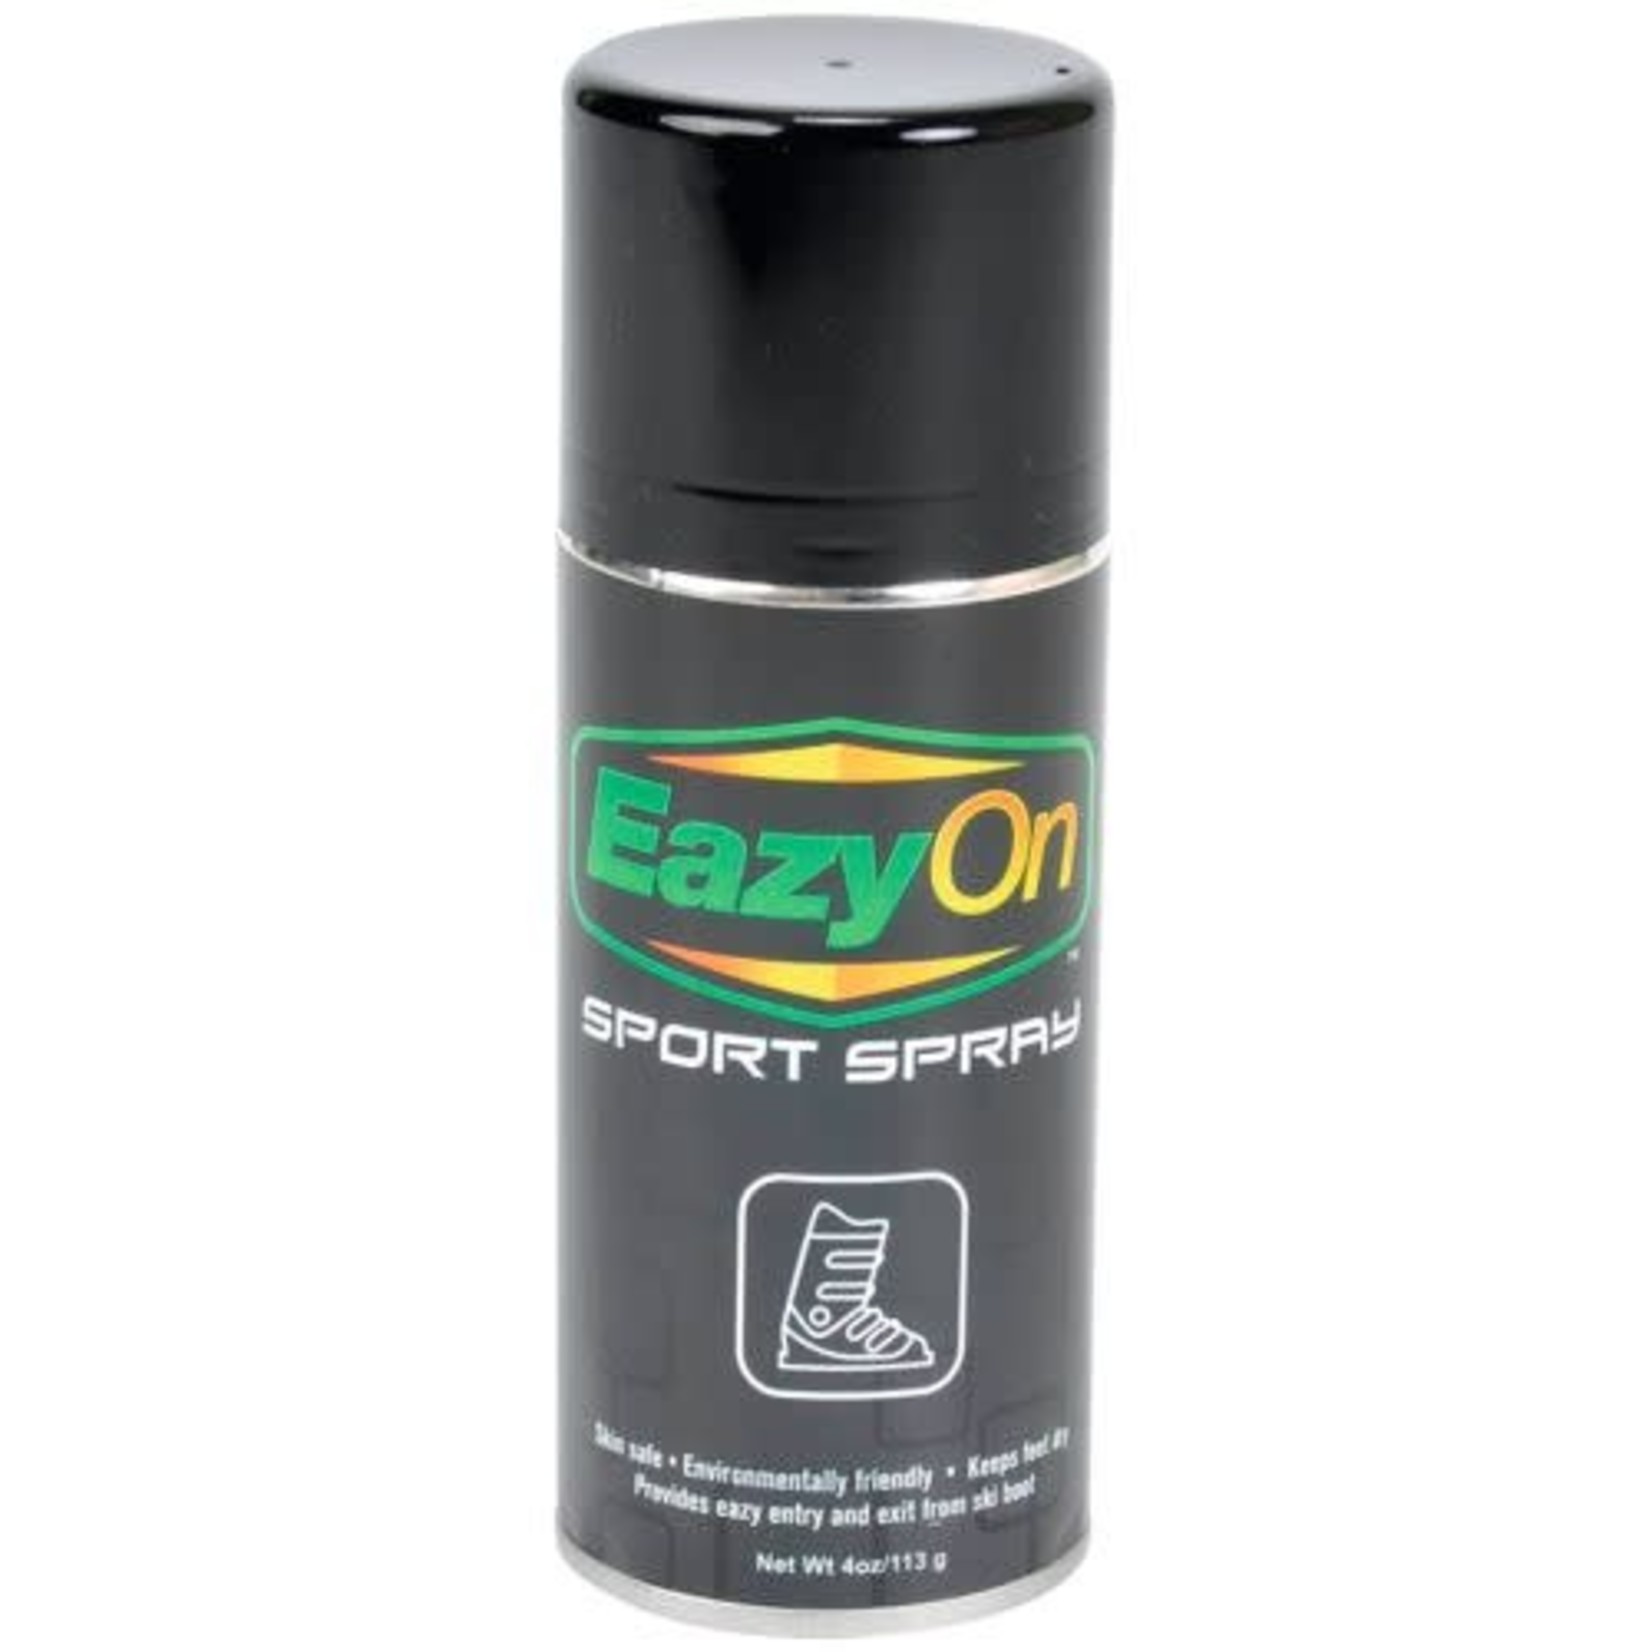 Eazy On Eazy On Sport Spray